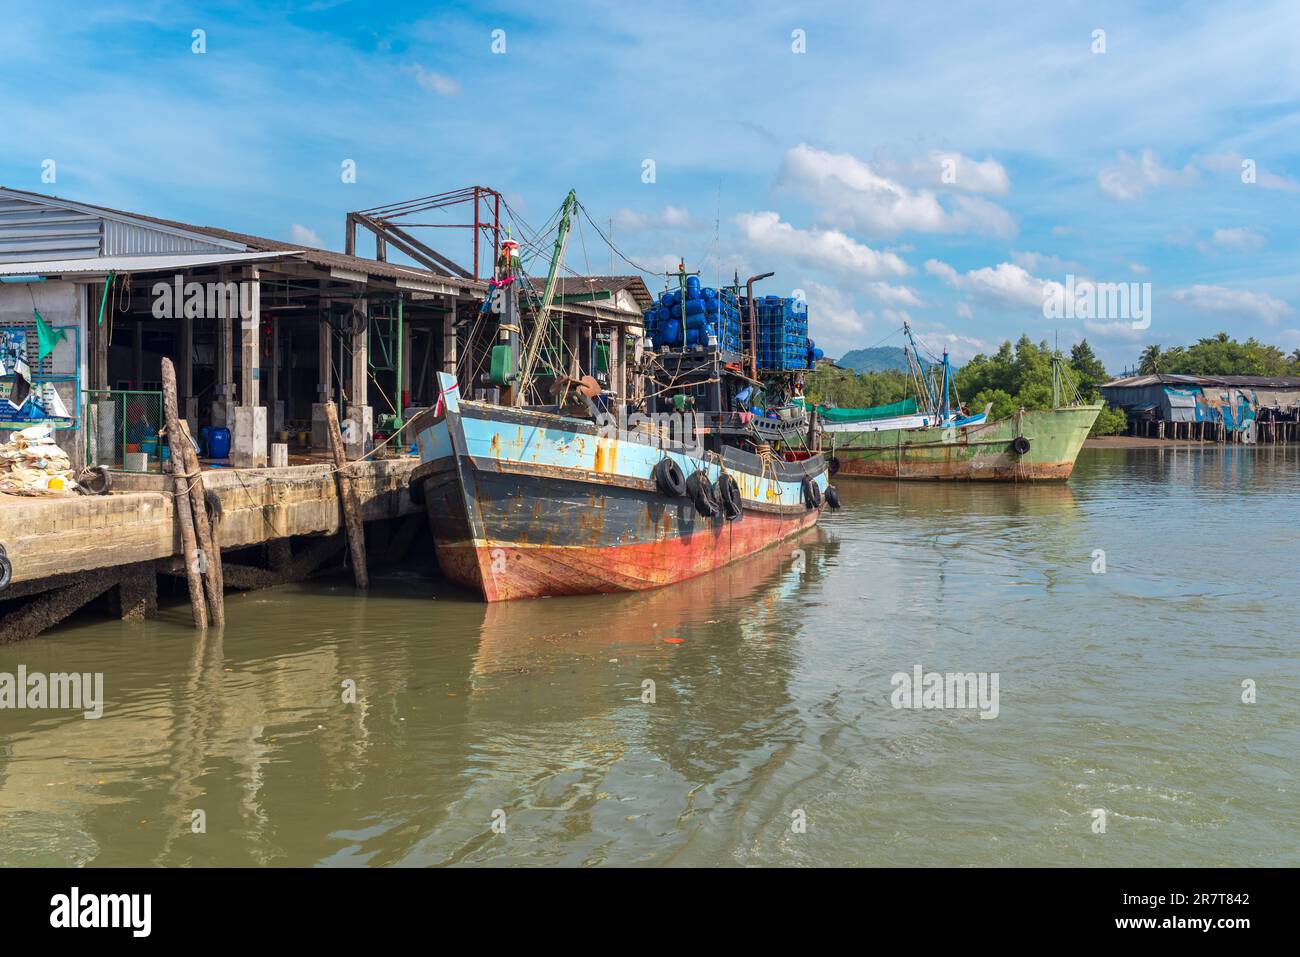 Le chalutier de pêche est amarré à la jetée dans la zone industrielle du port de pêche de Ranong, dans le sud-ouest de la Thaïlande Banque D'Images